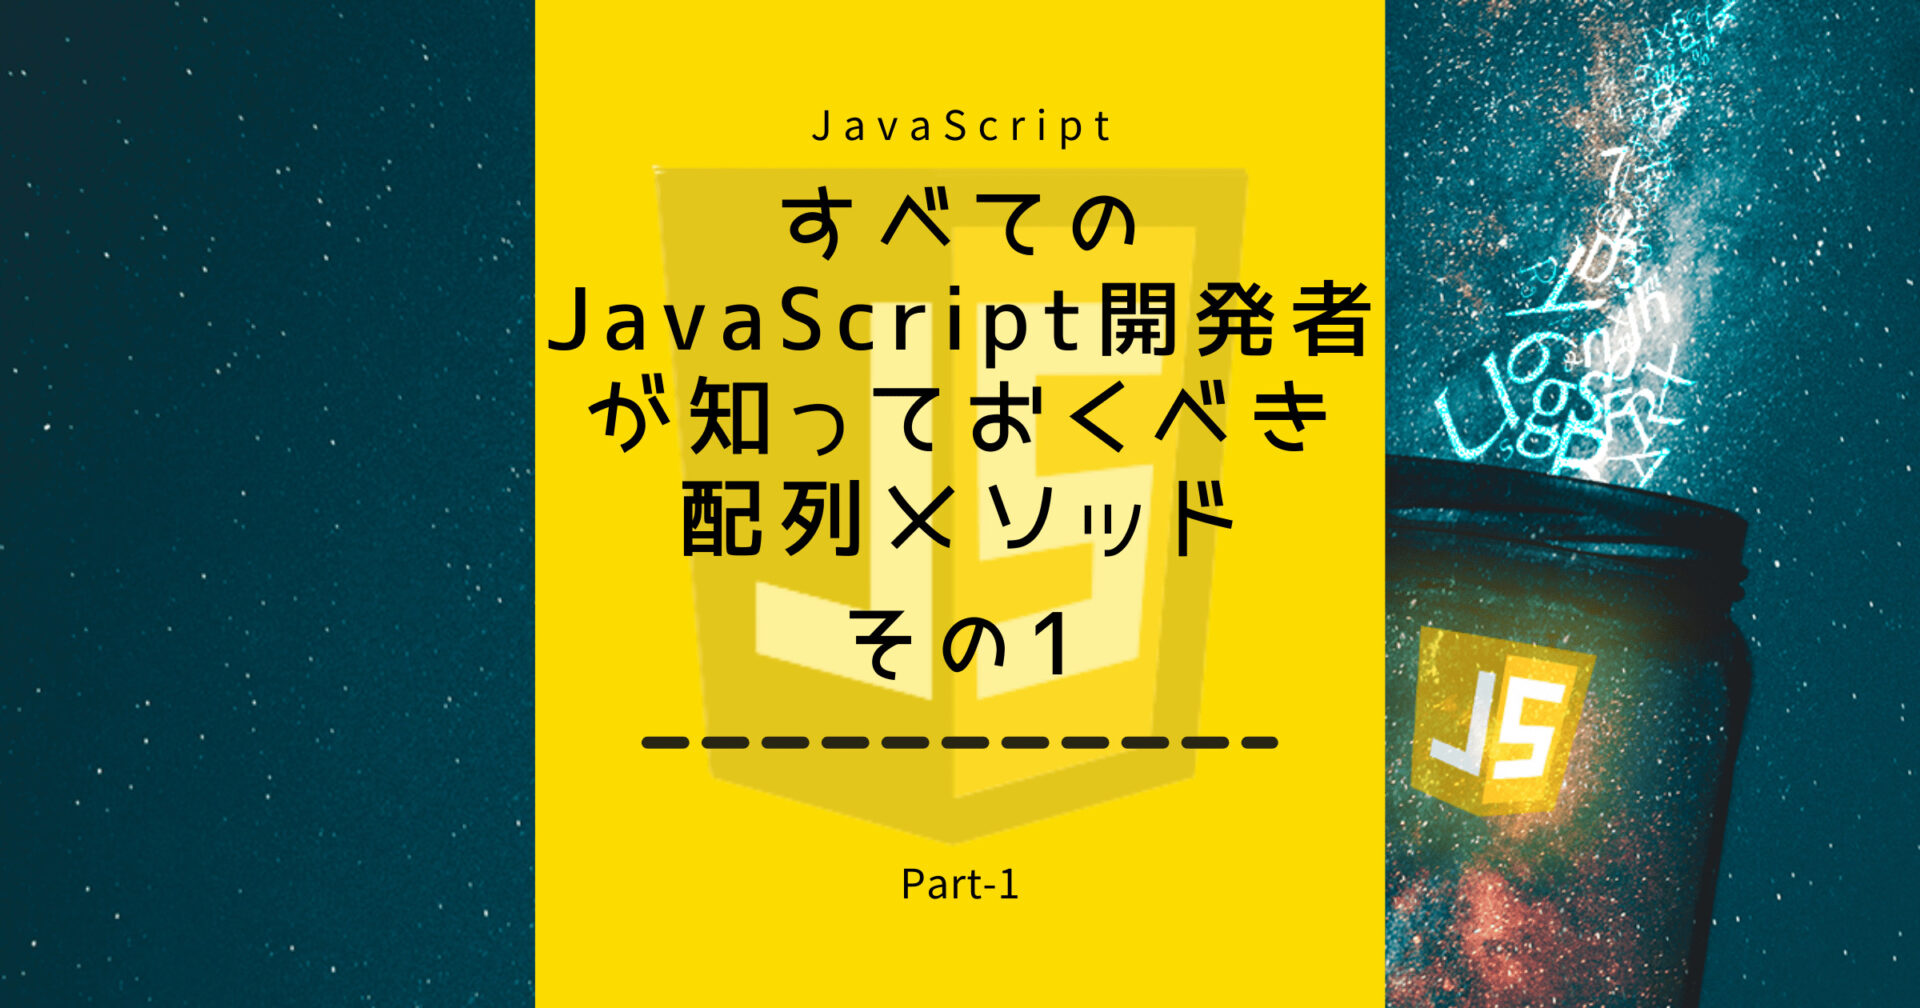 すべてのJavaScript開発者が知っておくべき配列メソッドPart-1